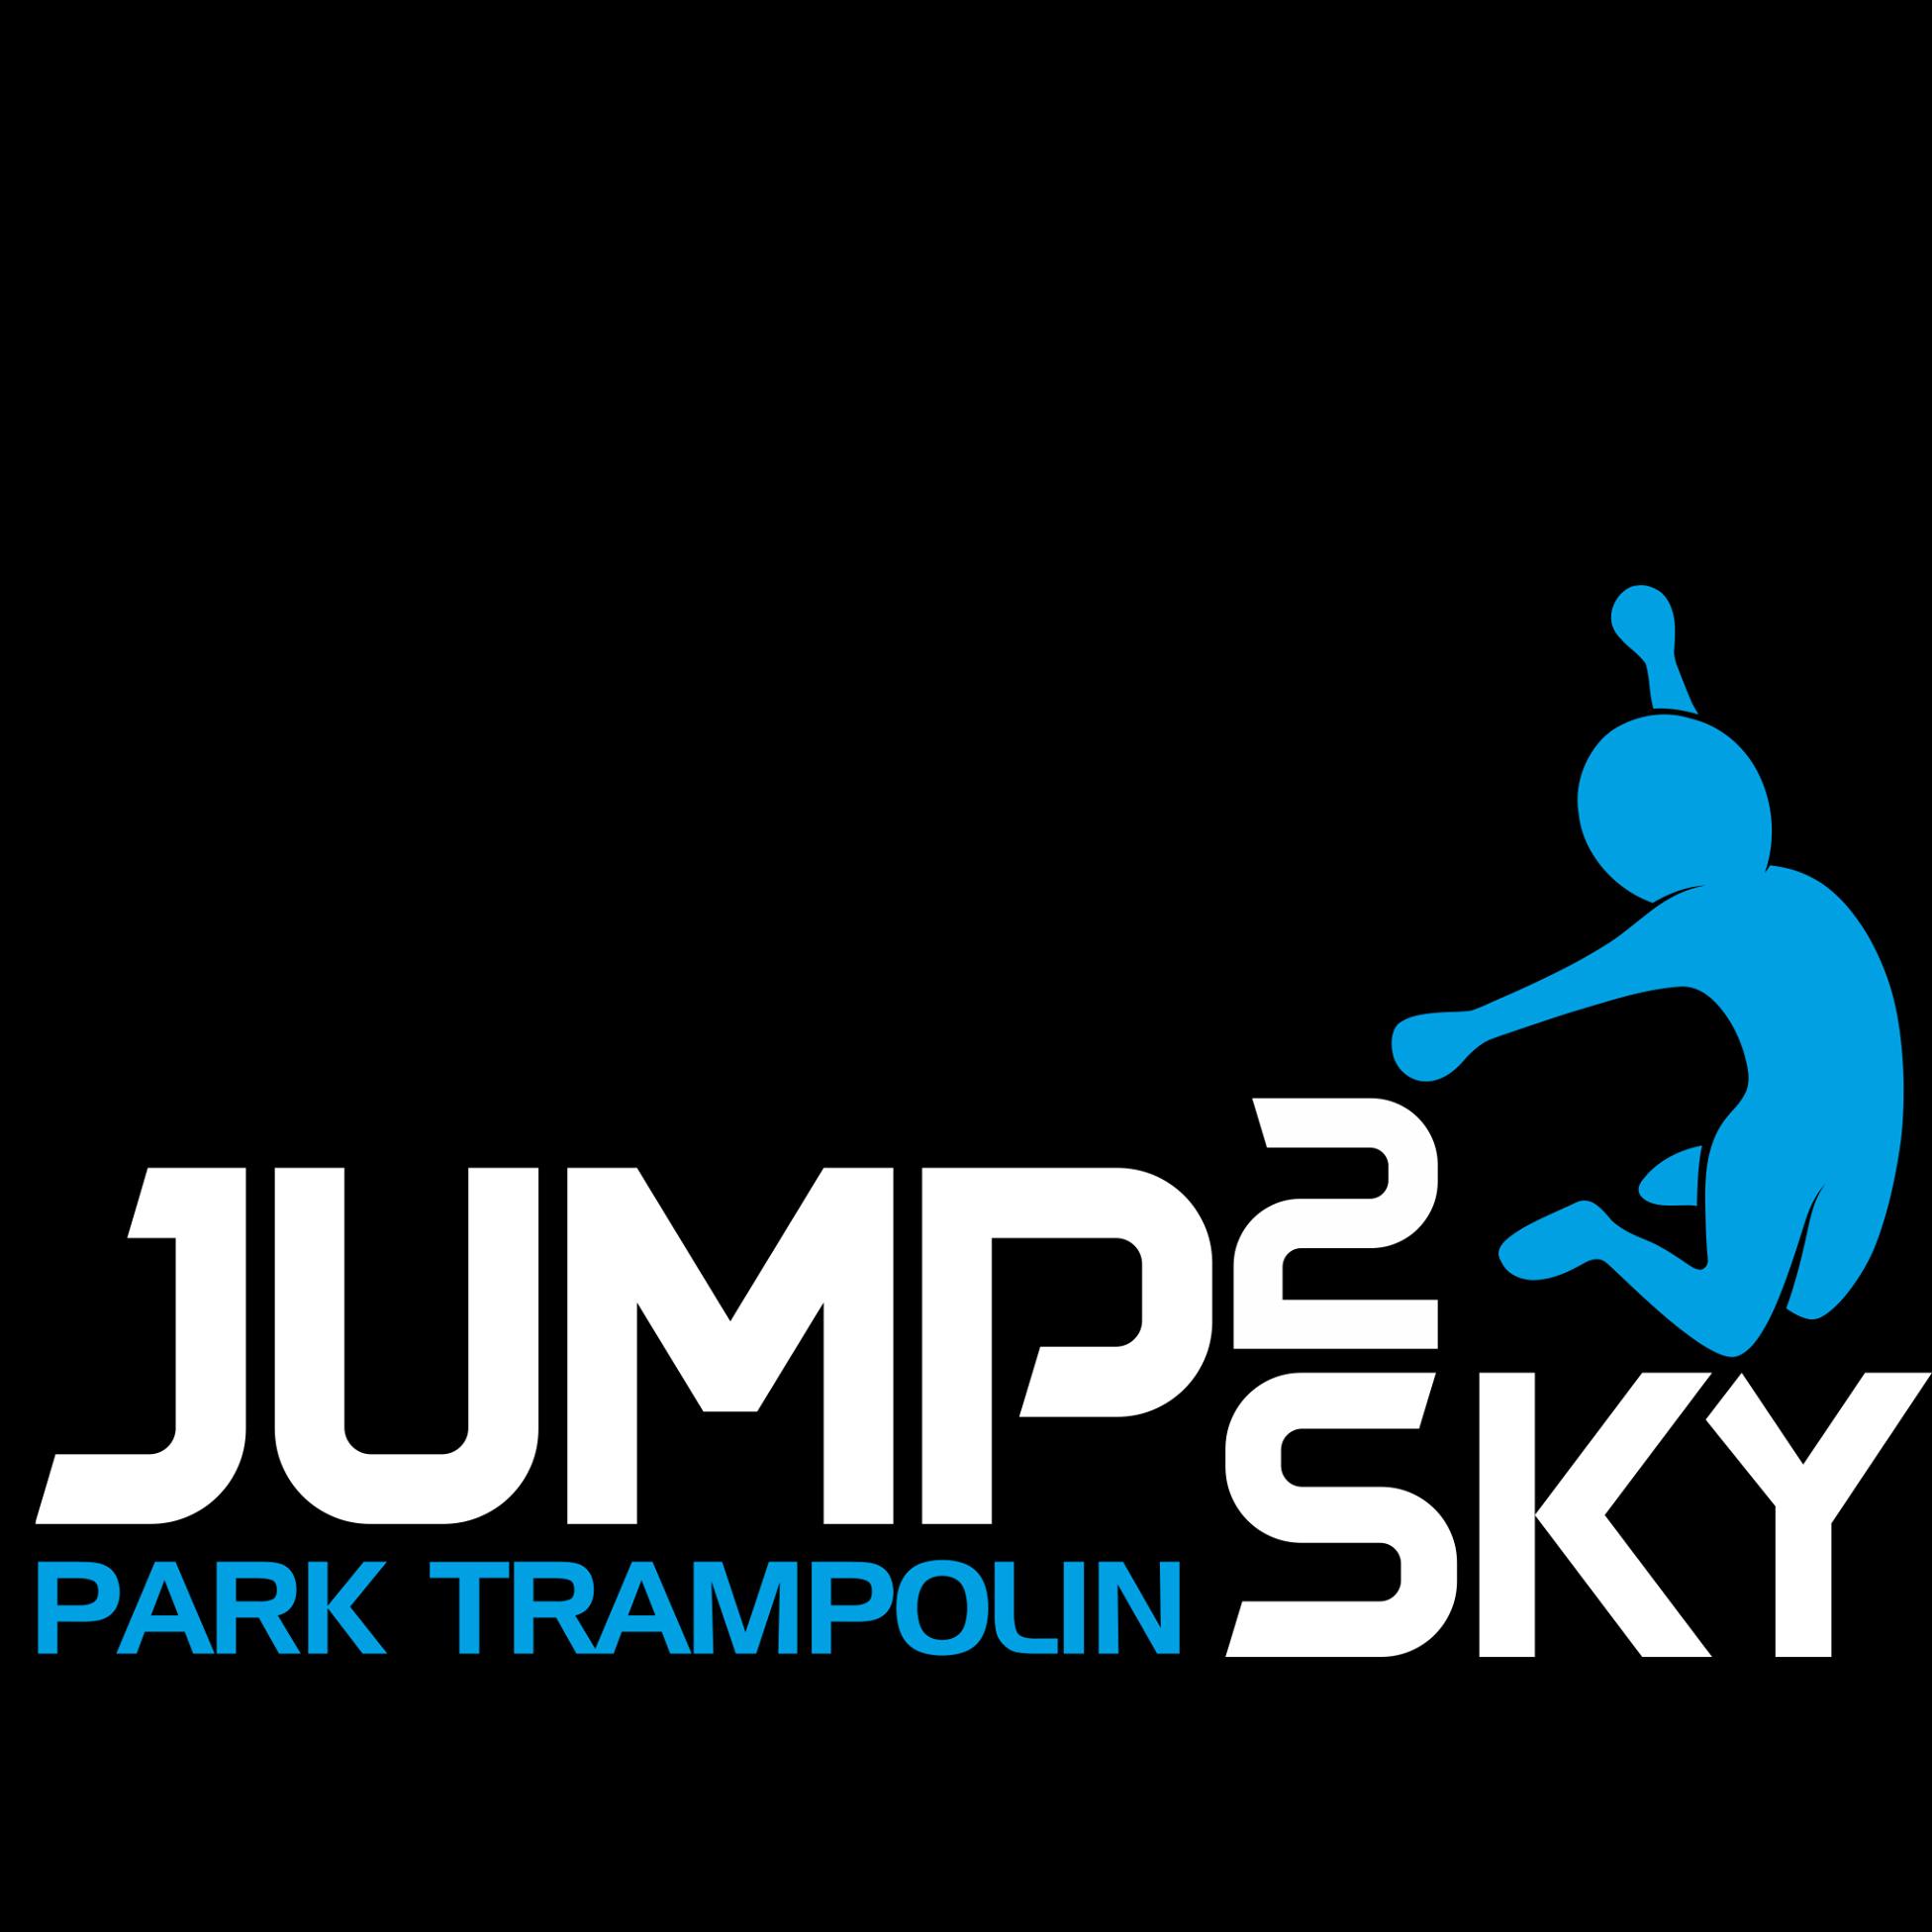 Park Trampolin Jump2Sky